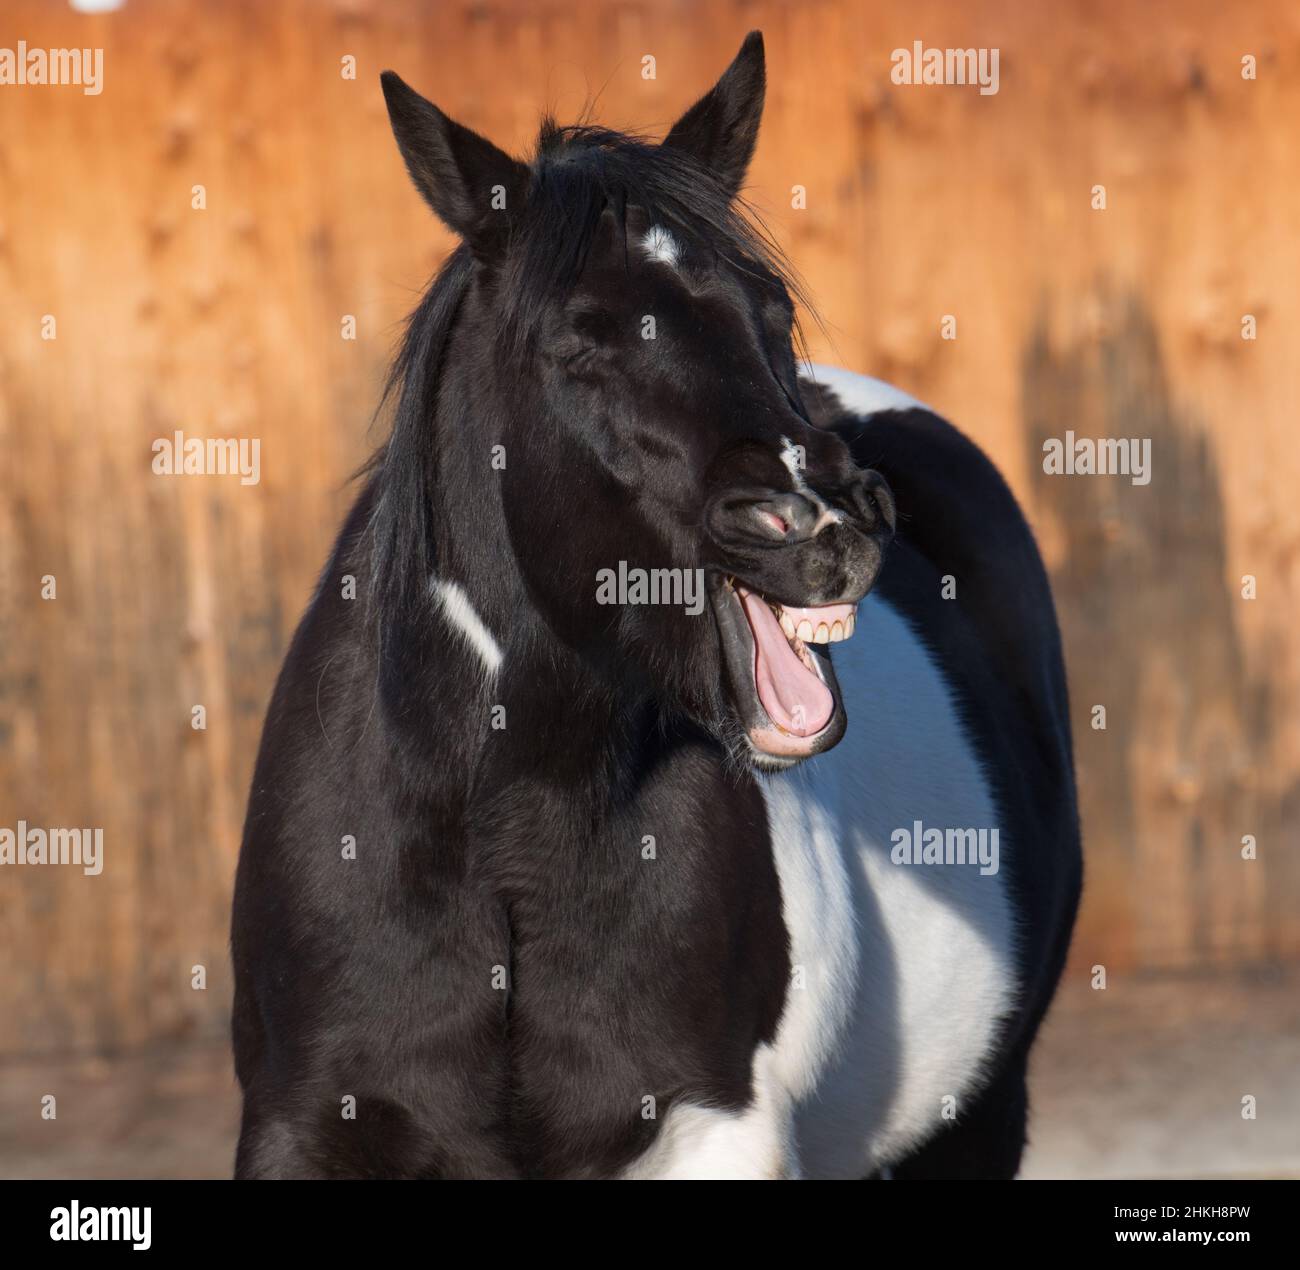 nero e bianco pinto cavallo tosse ridere o sbadigliare divertente foto di cavallo con bocca ampia denti aperti e lingua visibile Foto Stock